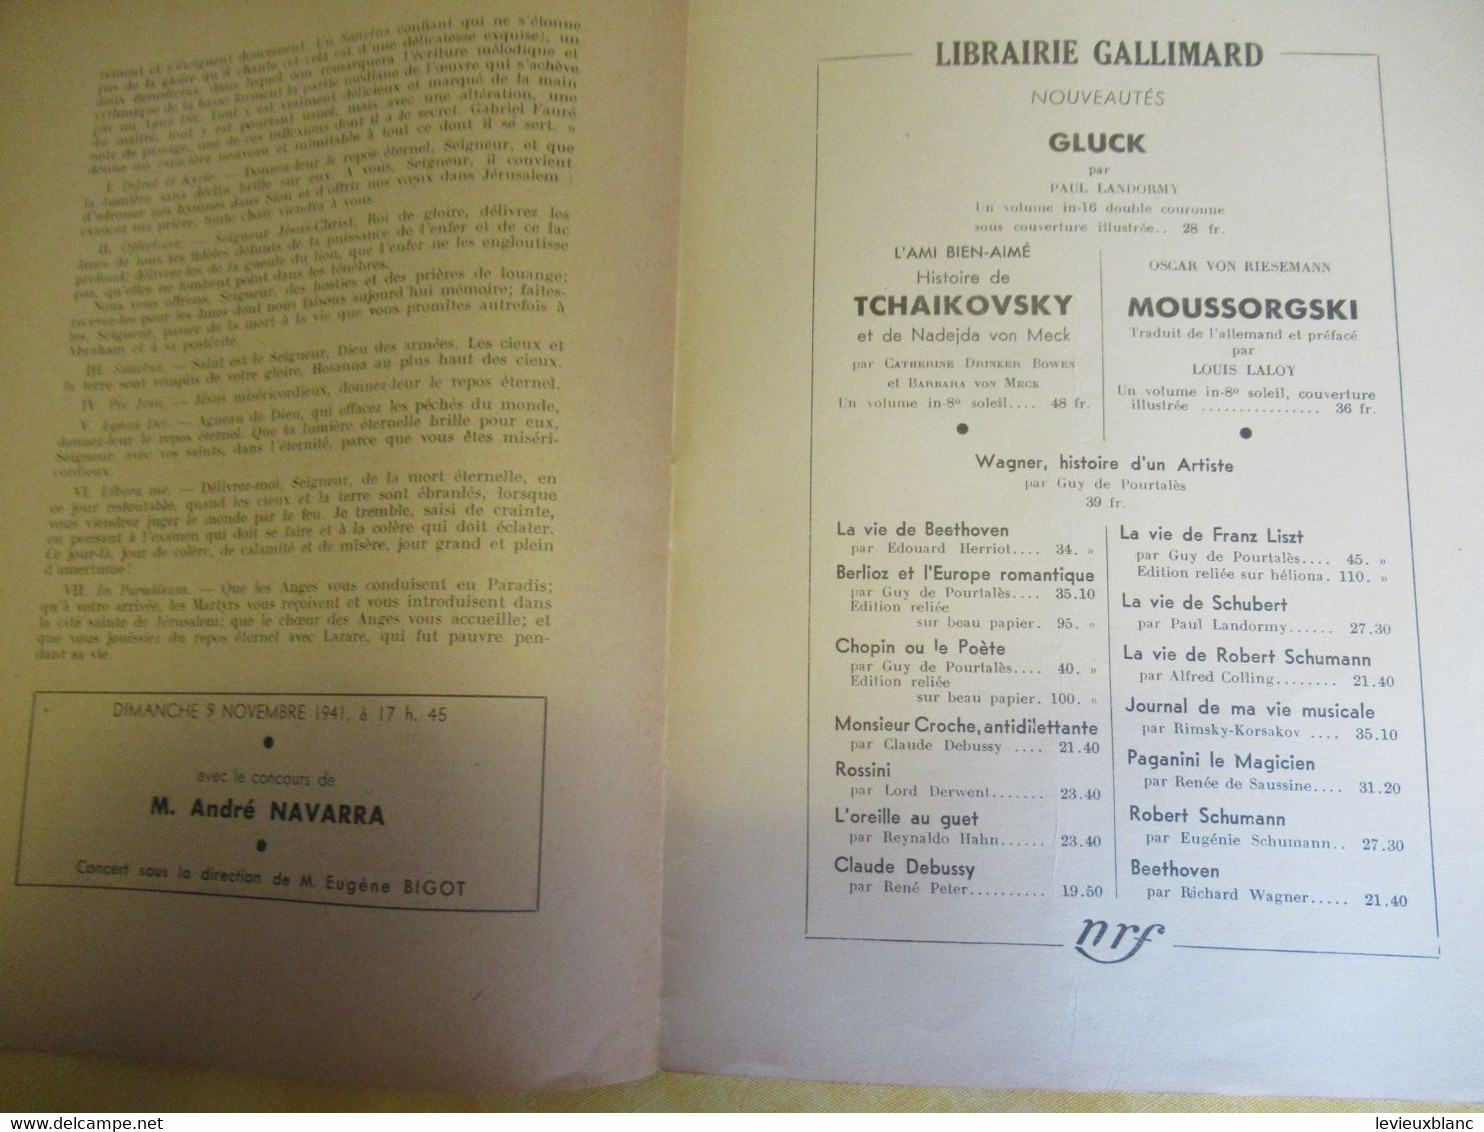 Programme Ancien/Musique/Grande Salle PLAYEL/Ass..des Concerts LAMOUREUX/ BIGOT Pdt /1941  PROG331 - Programma's